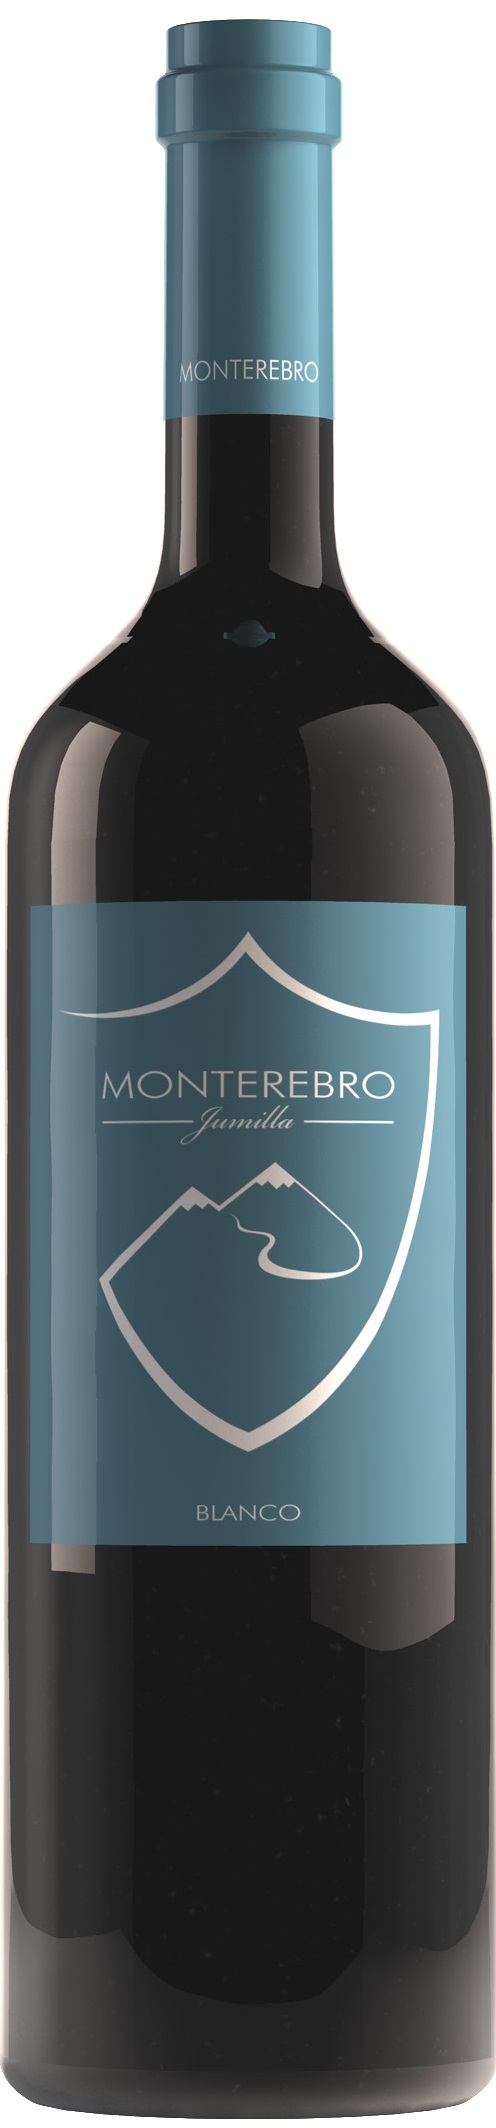 Imagen de la botella de Vino Monterebro Blanco